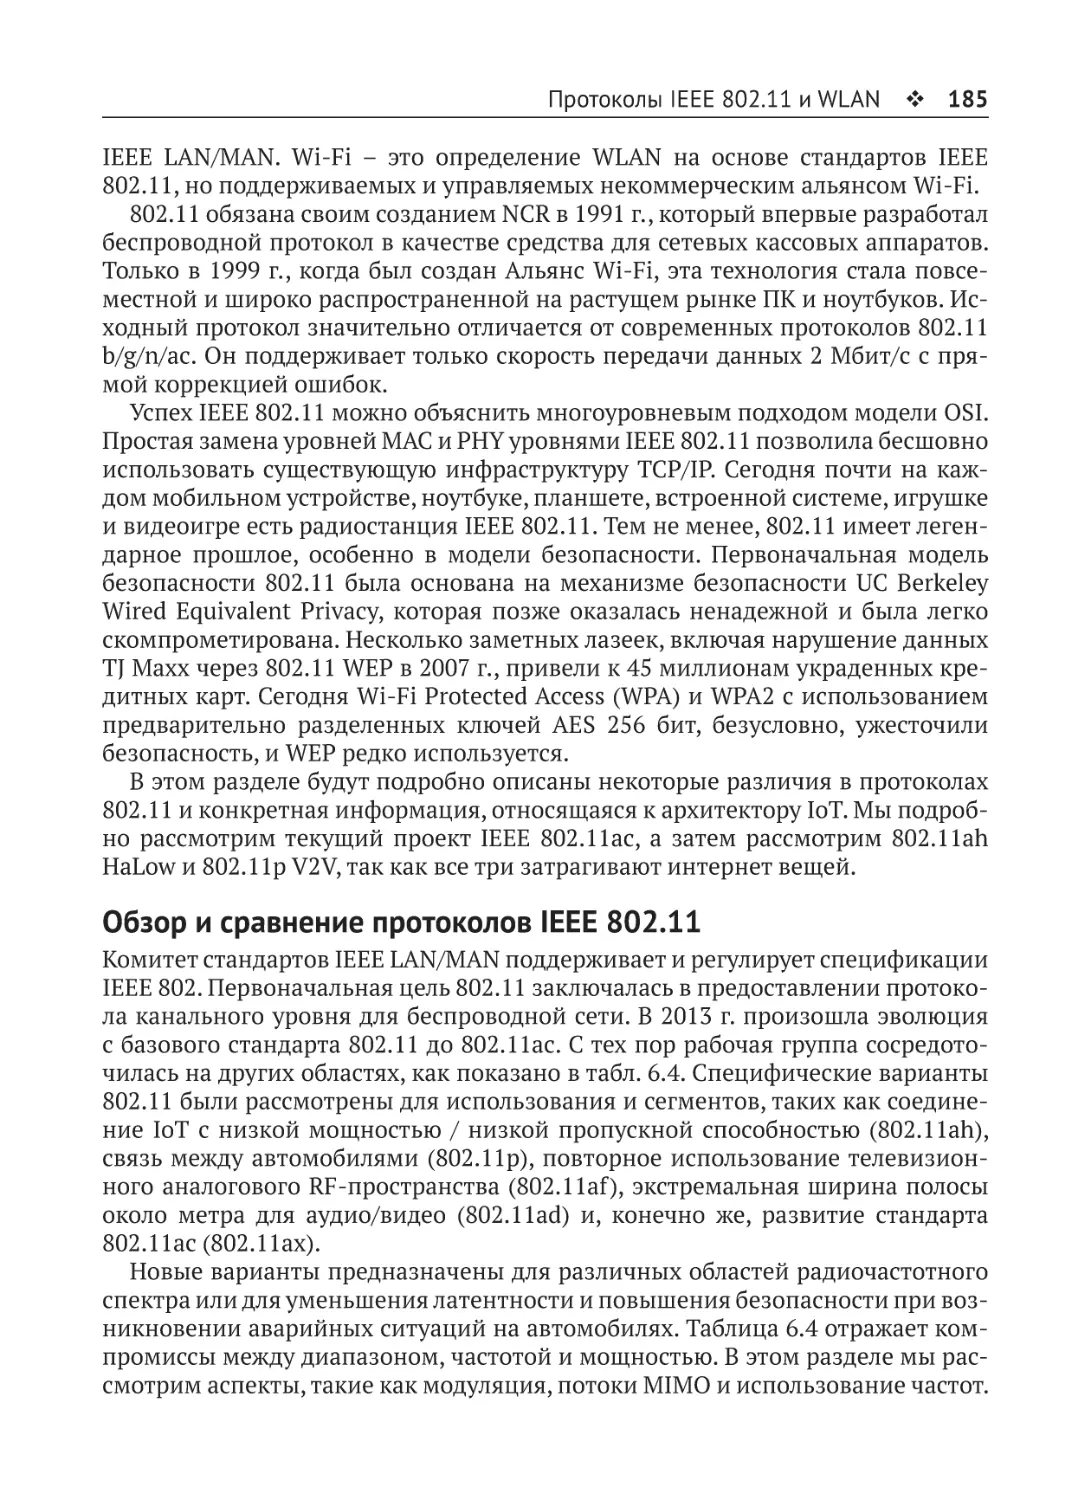 Обзор и сравнение протоколов IEEE 802.11